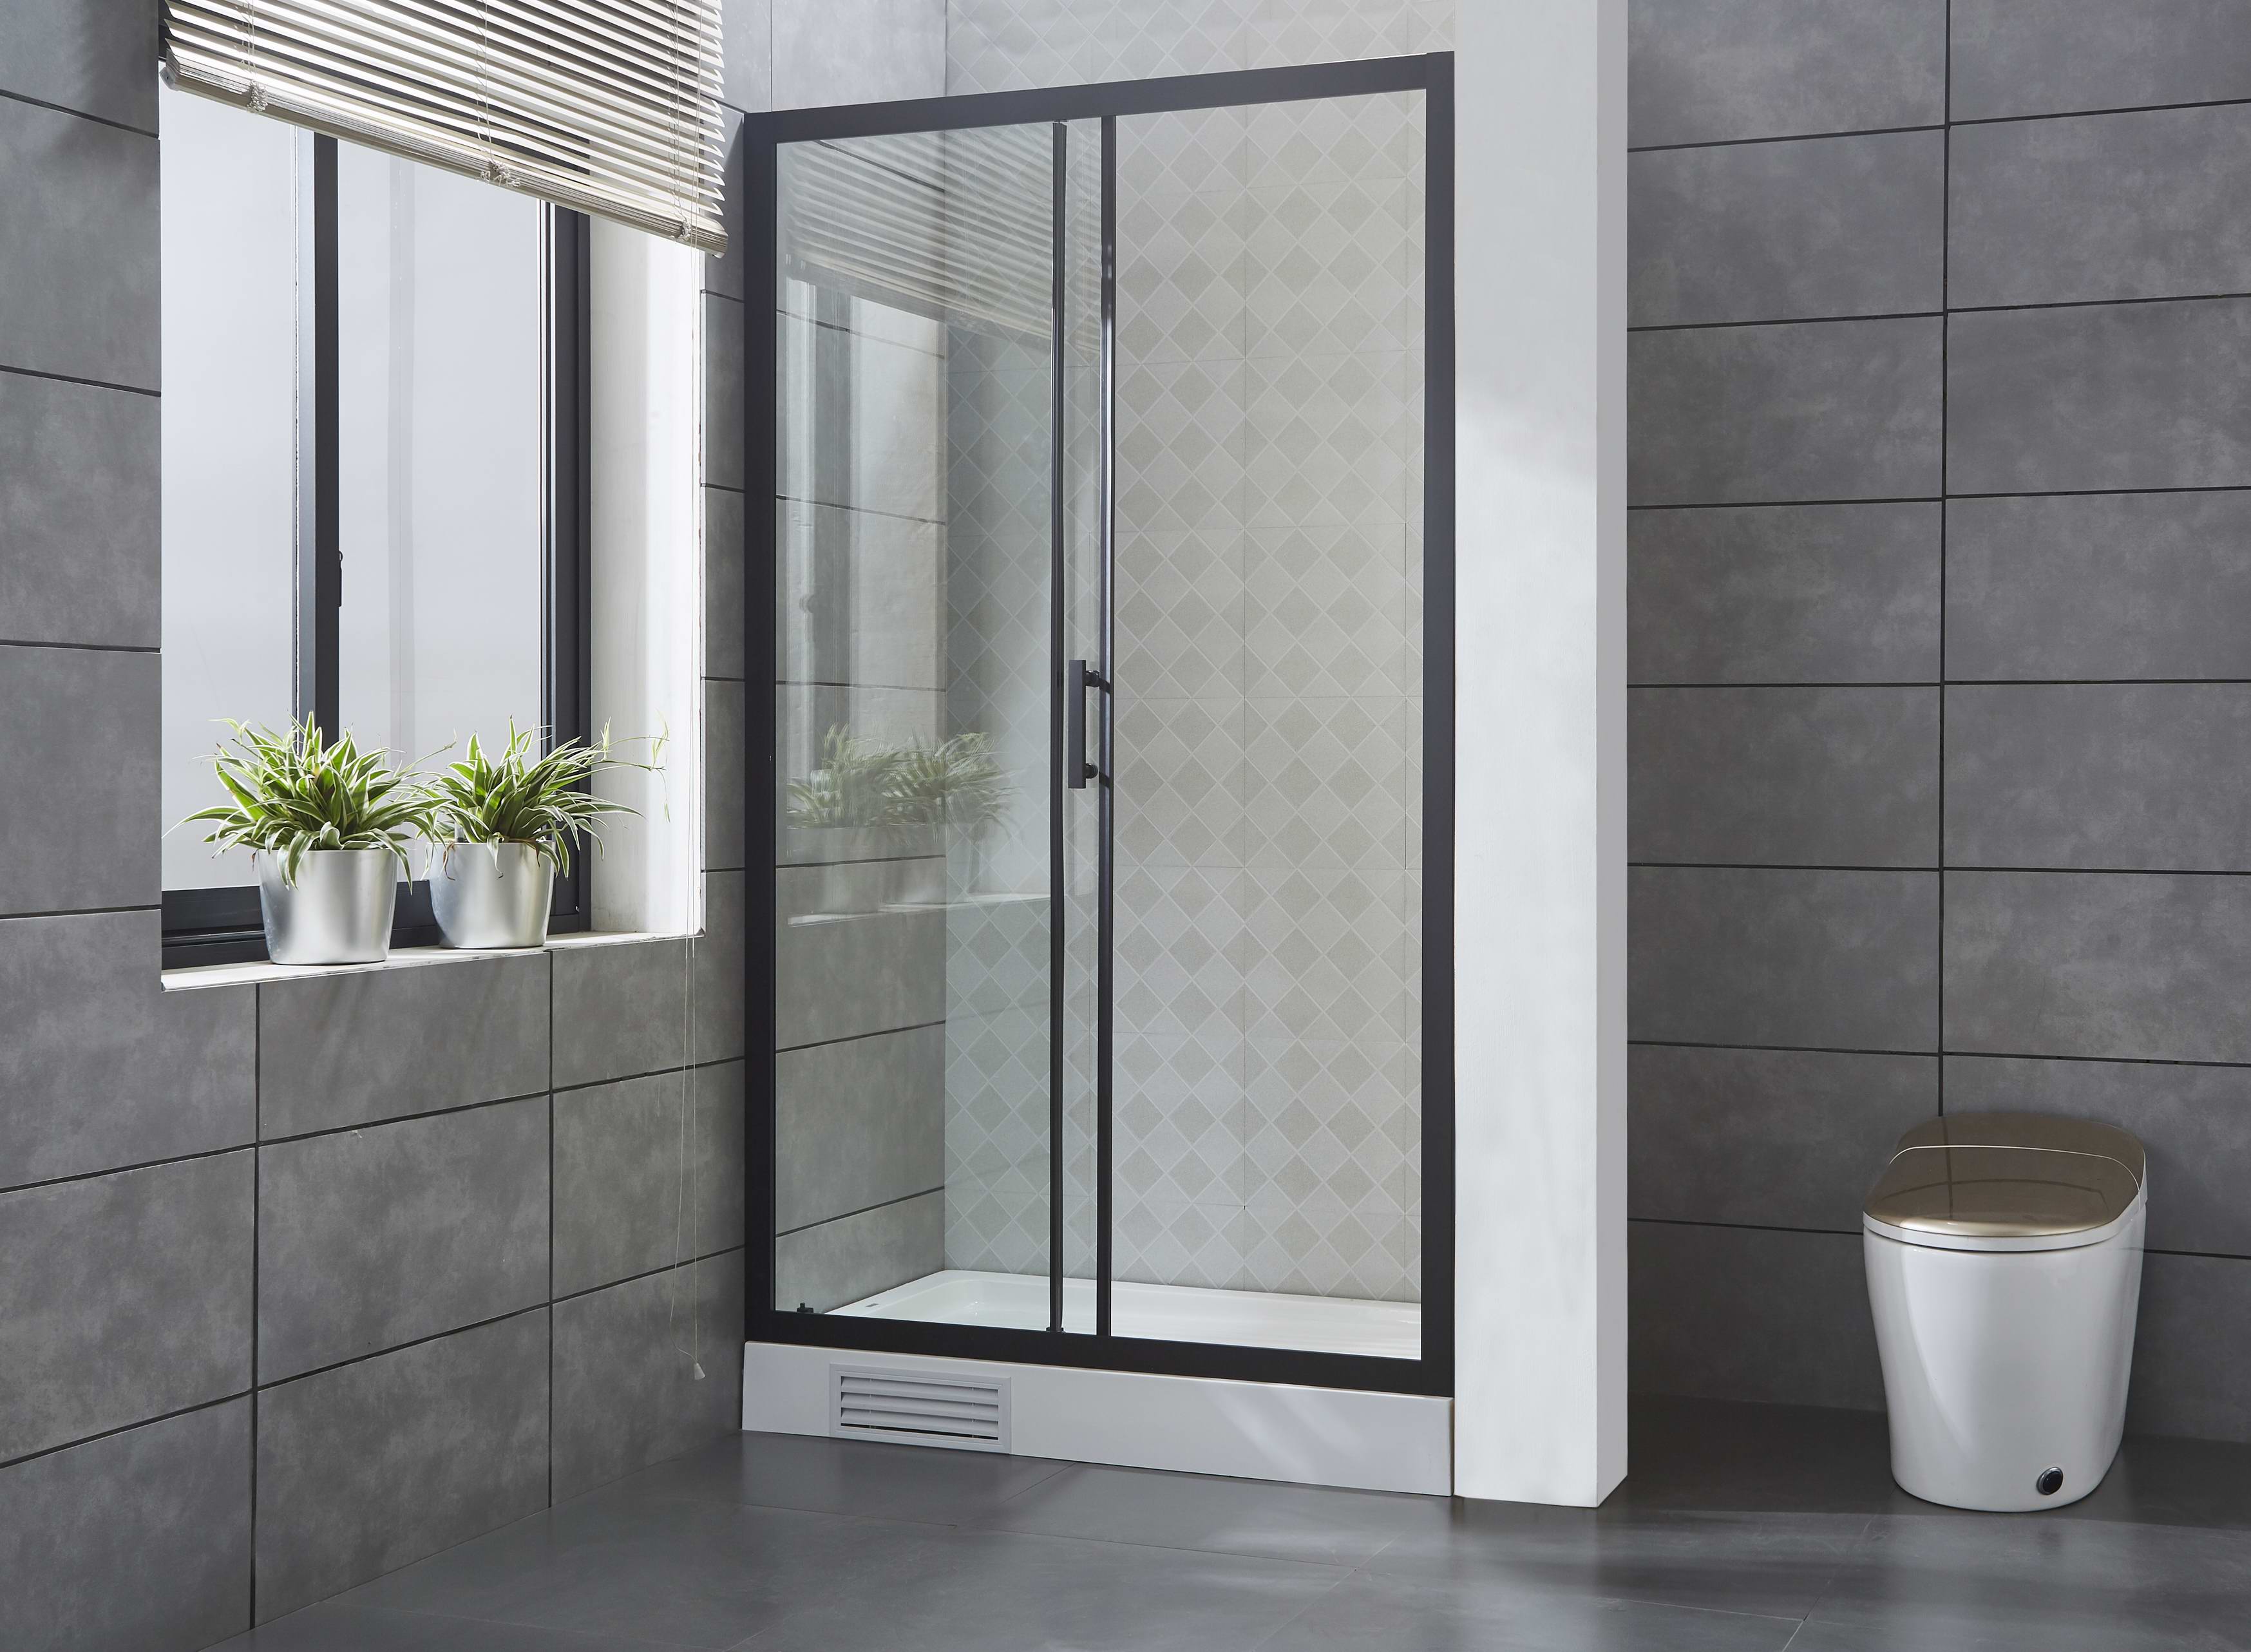 2020 New Bathroom Shower Door Tempered Glass Sliding 6/8mm Panles Black Aluminum Frame